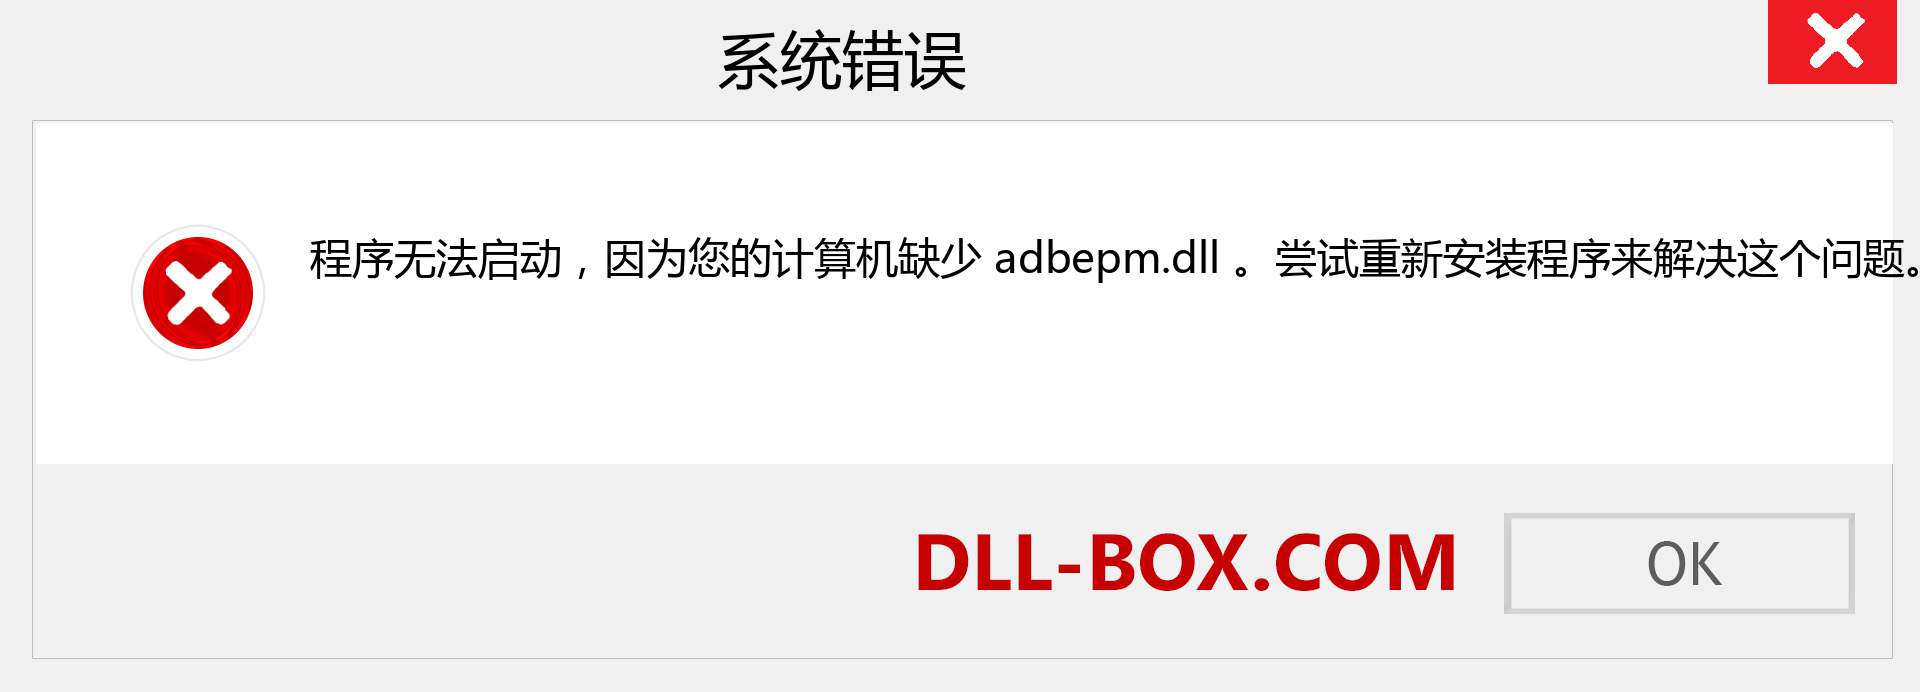 adbepm.dll 文件丢失？。 适用于 Windows 7、8、10 的下载 - 修复 Windows、照片、图像上的 adbepm dll 丢失错误